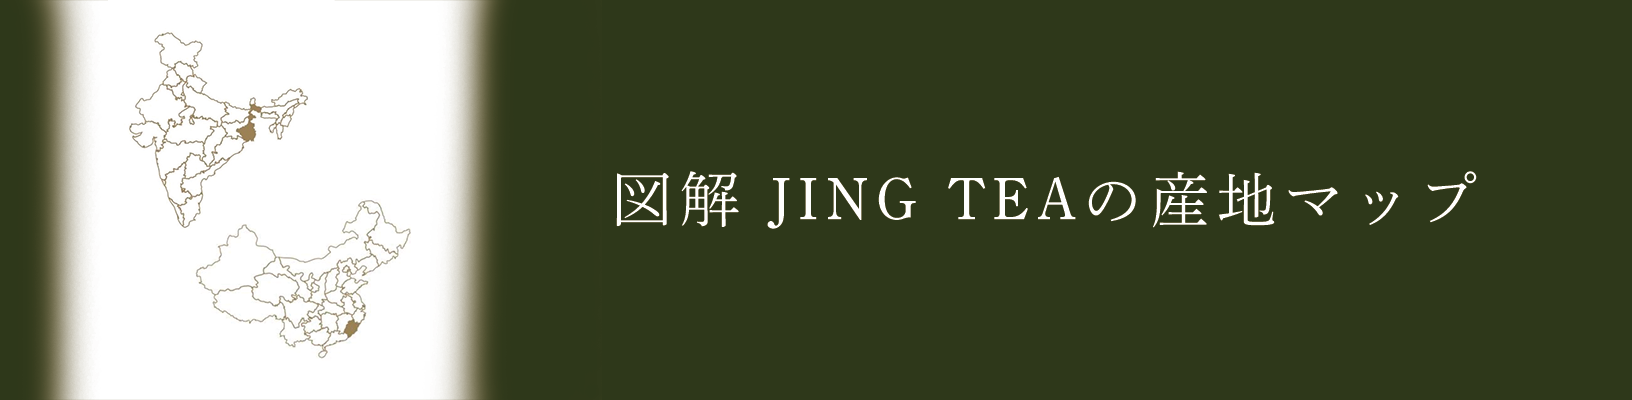 図解JING TEAの産地マップ